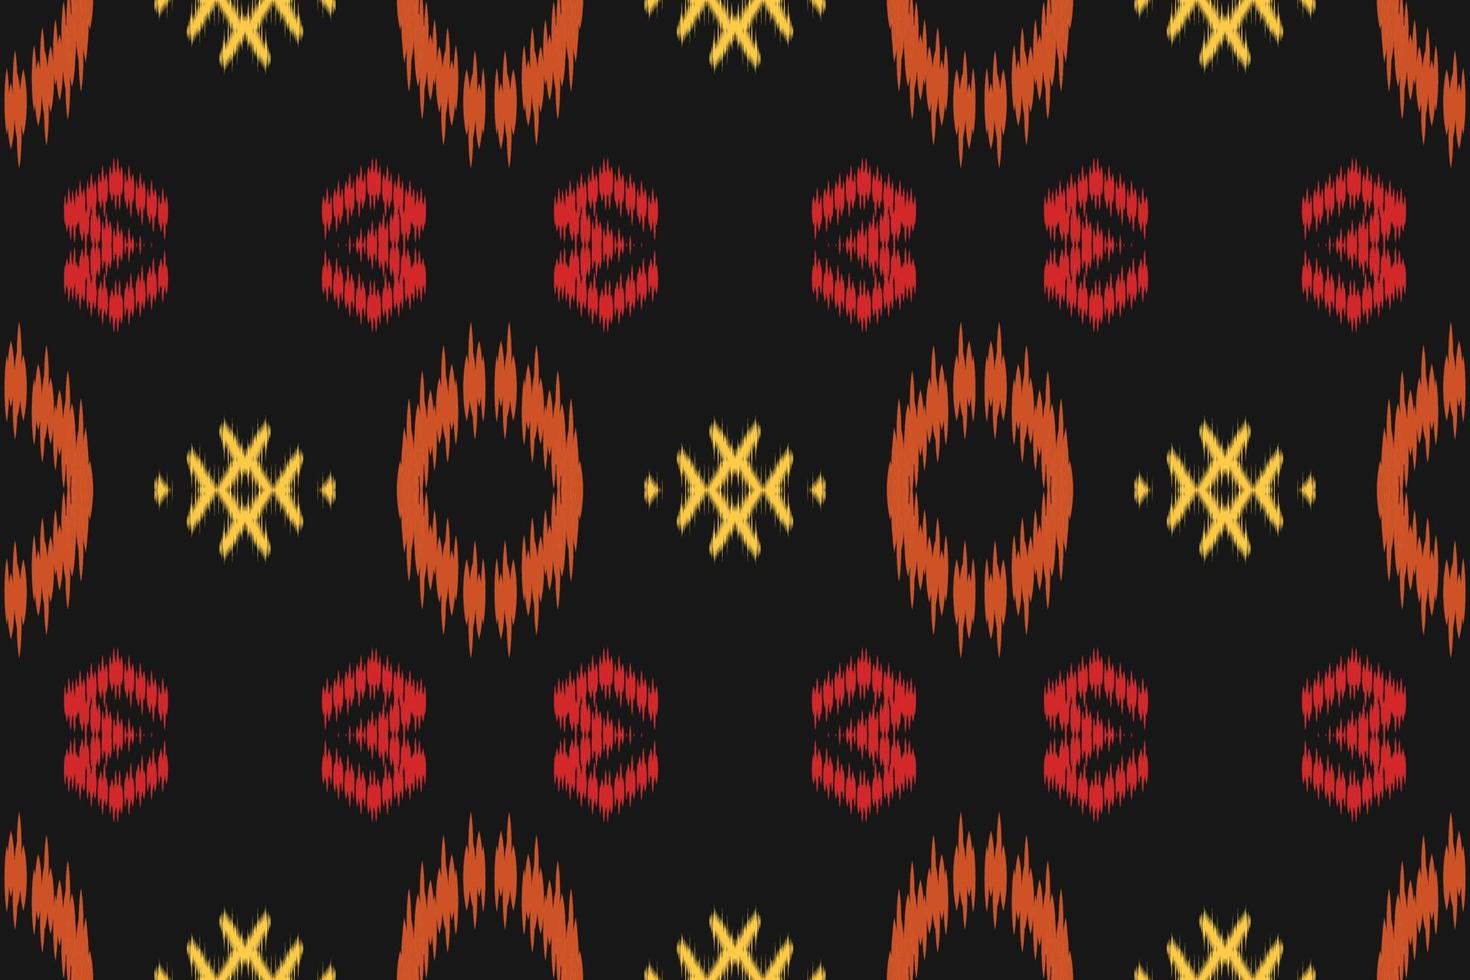 Ikat dots tribal abstract Seamless Pattern. Ethnic Geometric Ikkat Batik Digital vector textile Design for Prints Fabric saree Mughal brush symbol Swaths texture Kurti Kurtis Kurtas